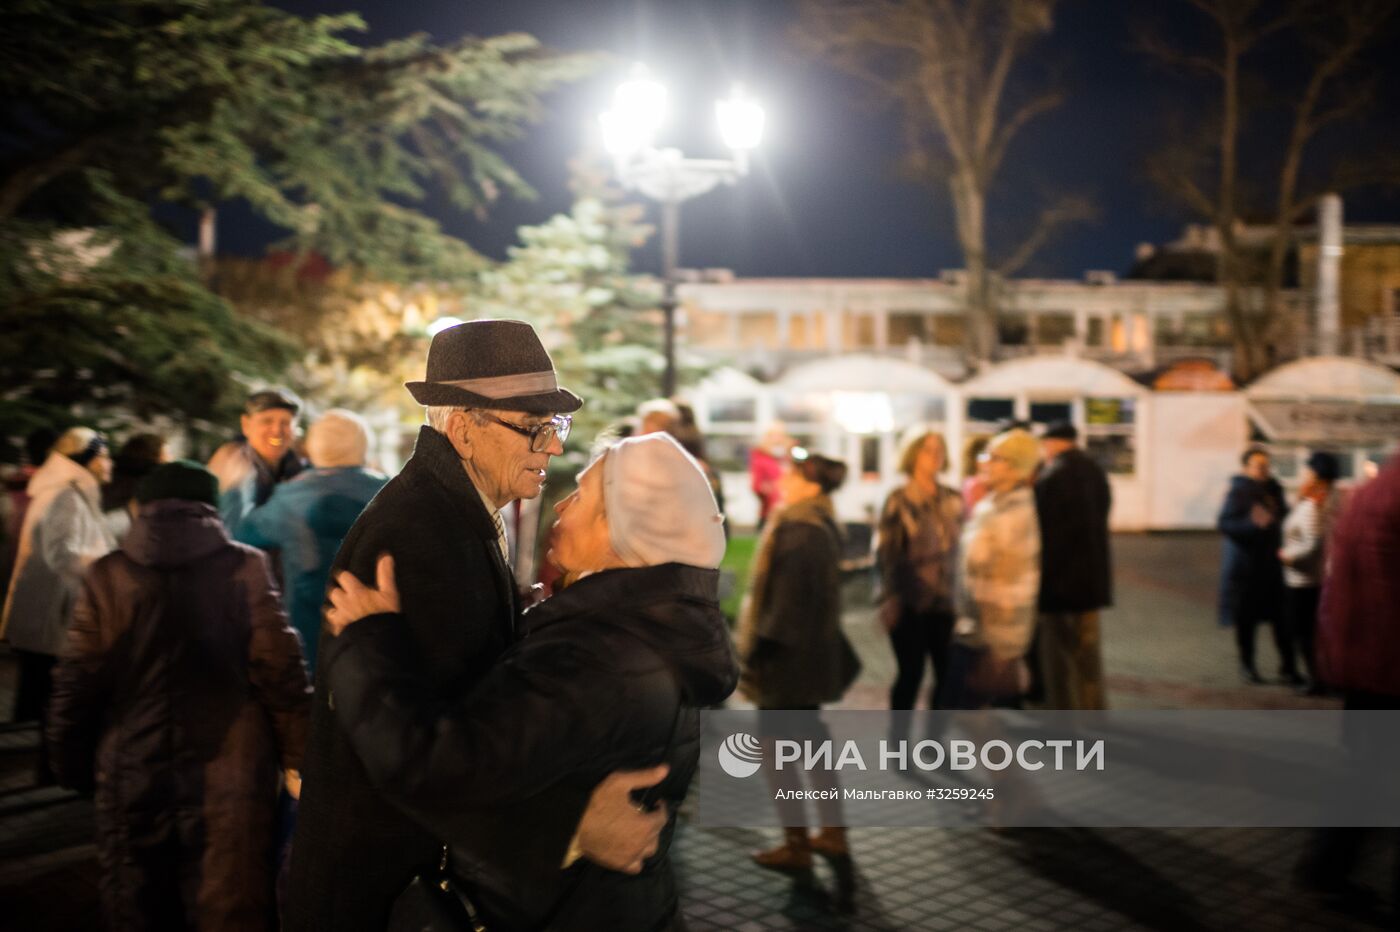 Главная новогодняя ёлка города Севастополя